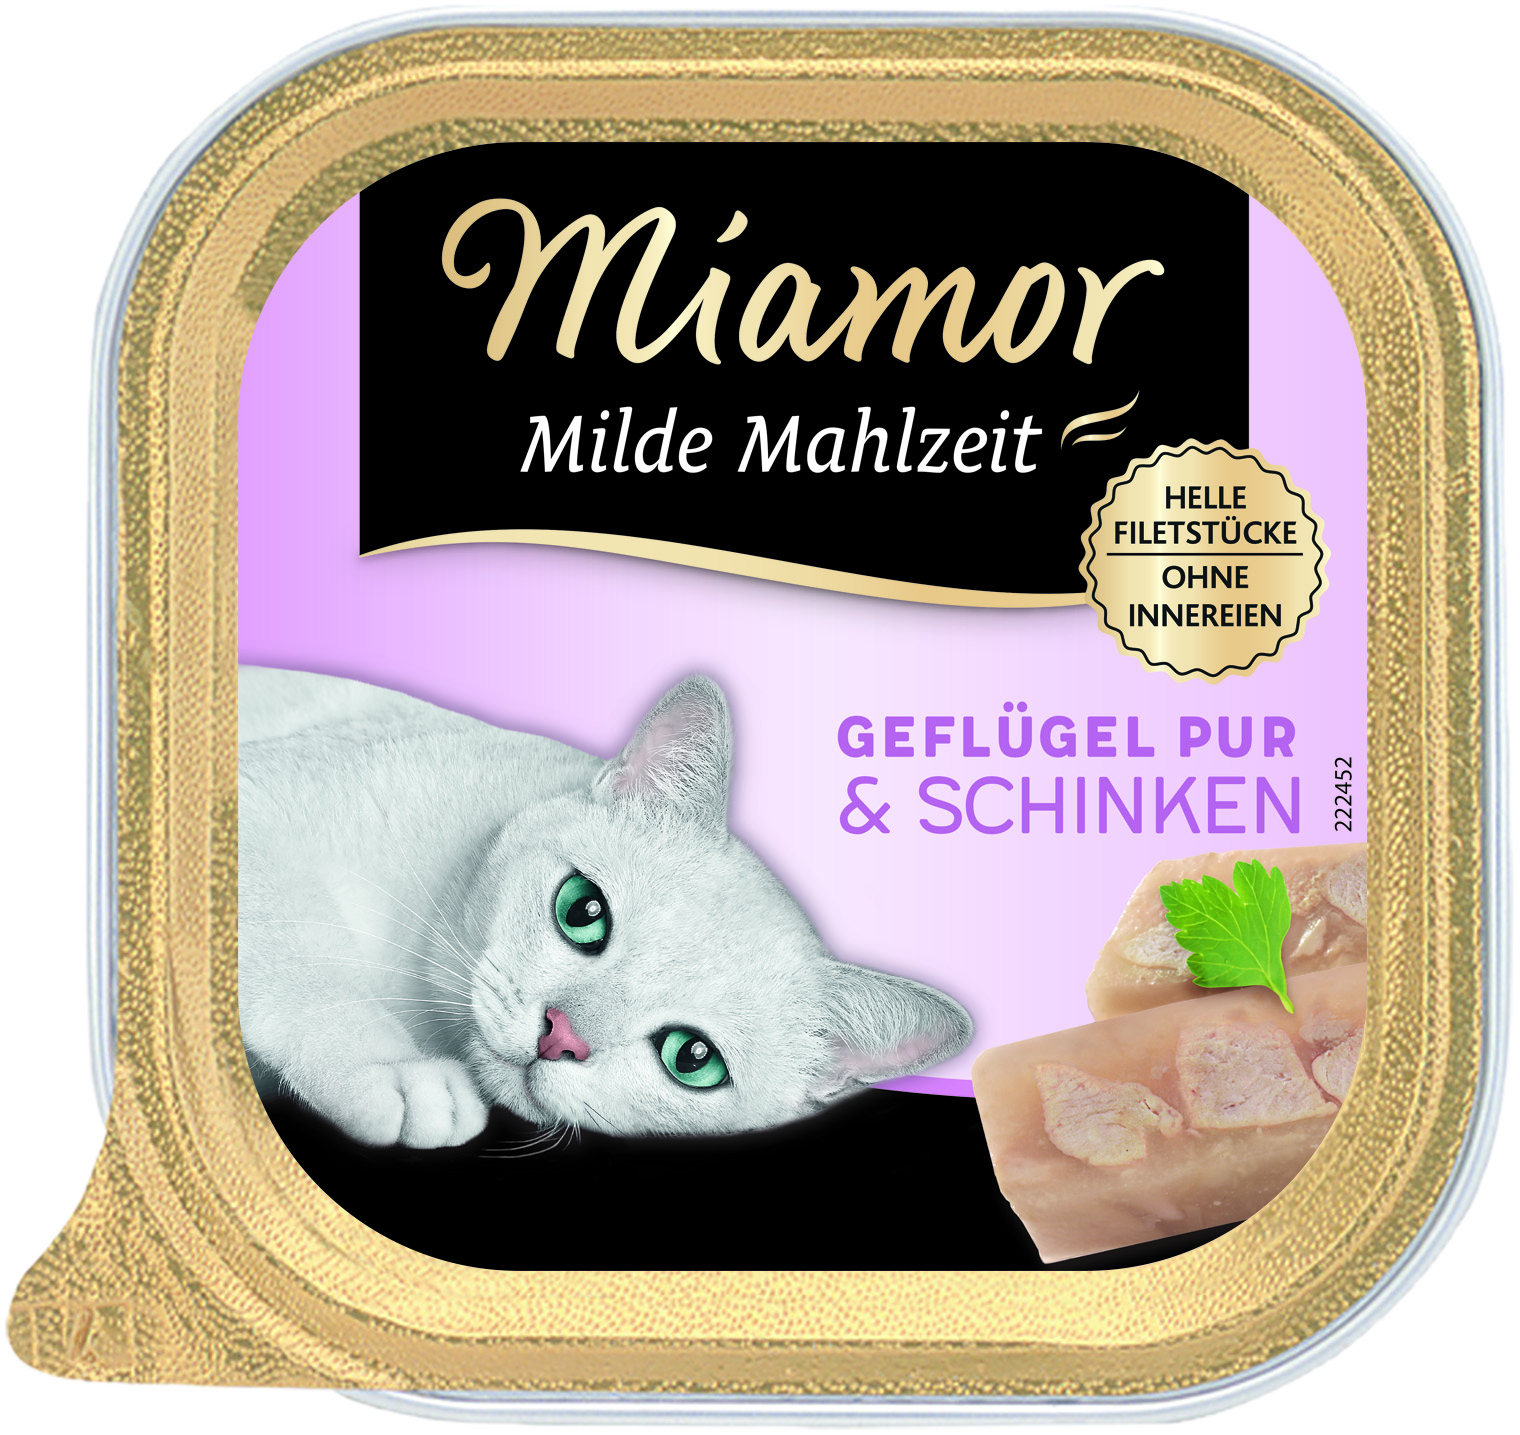 Miamor Milde Mahlzeit Geflügel & Schinken 100g